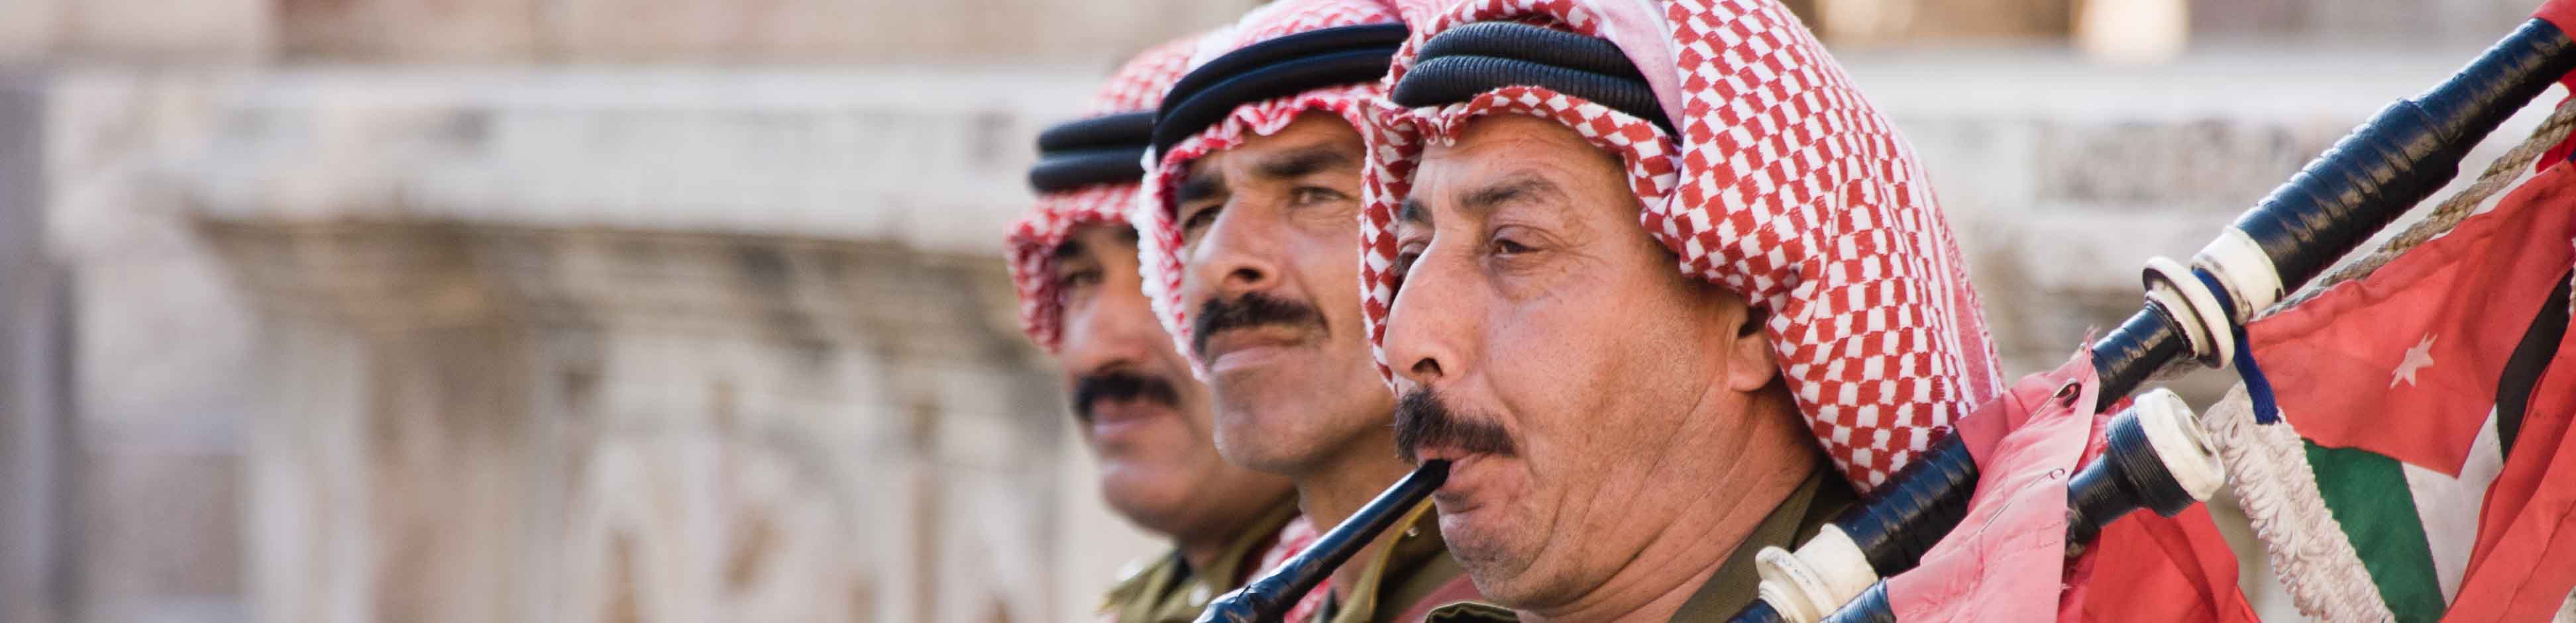 Dudelsackspieler der jordanischen Armee in Jerash